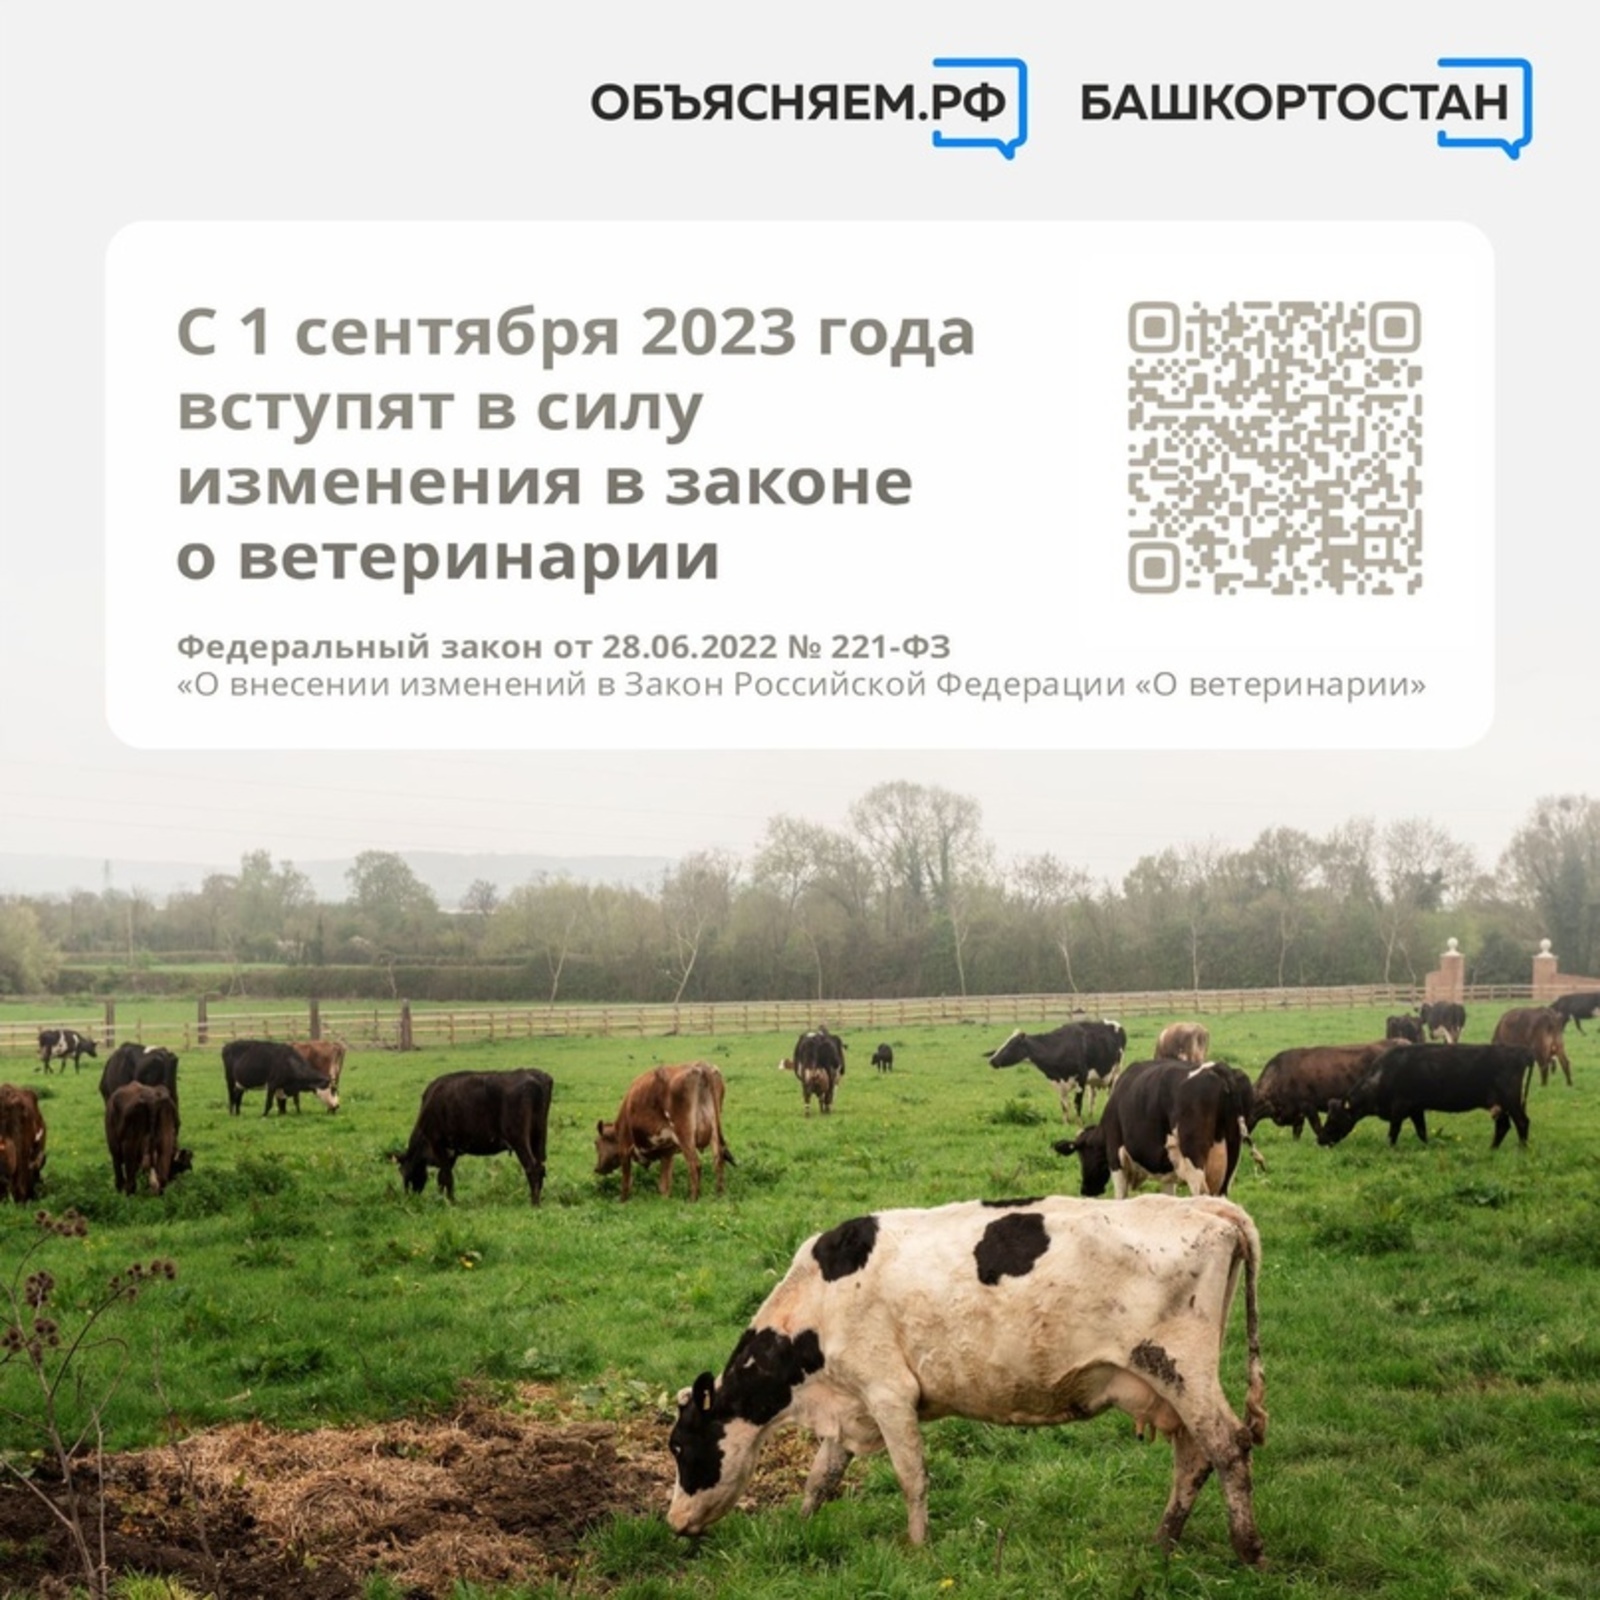 Объясняем. Башкортостан, пост: С 1 сентября 2023 года вступят в силу изменения в законе о ветеринарии